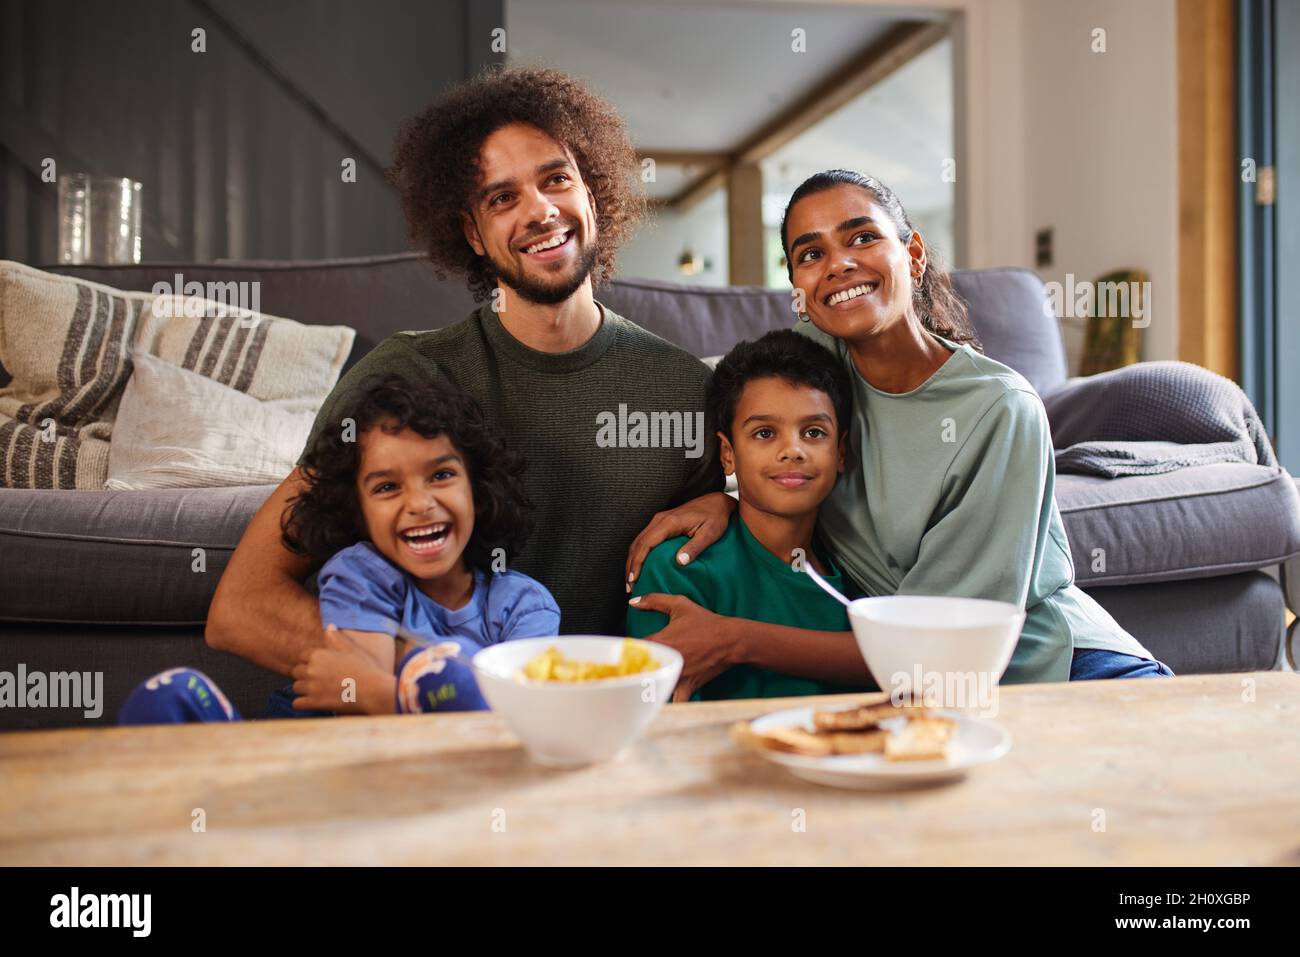 Family eating breakfast in living room Stock Photo